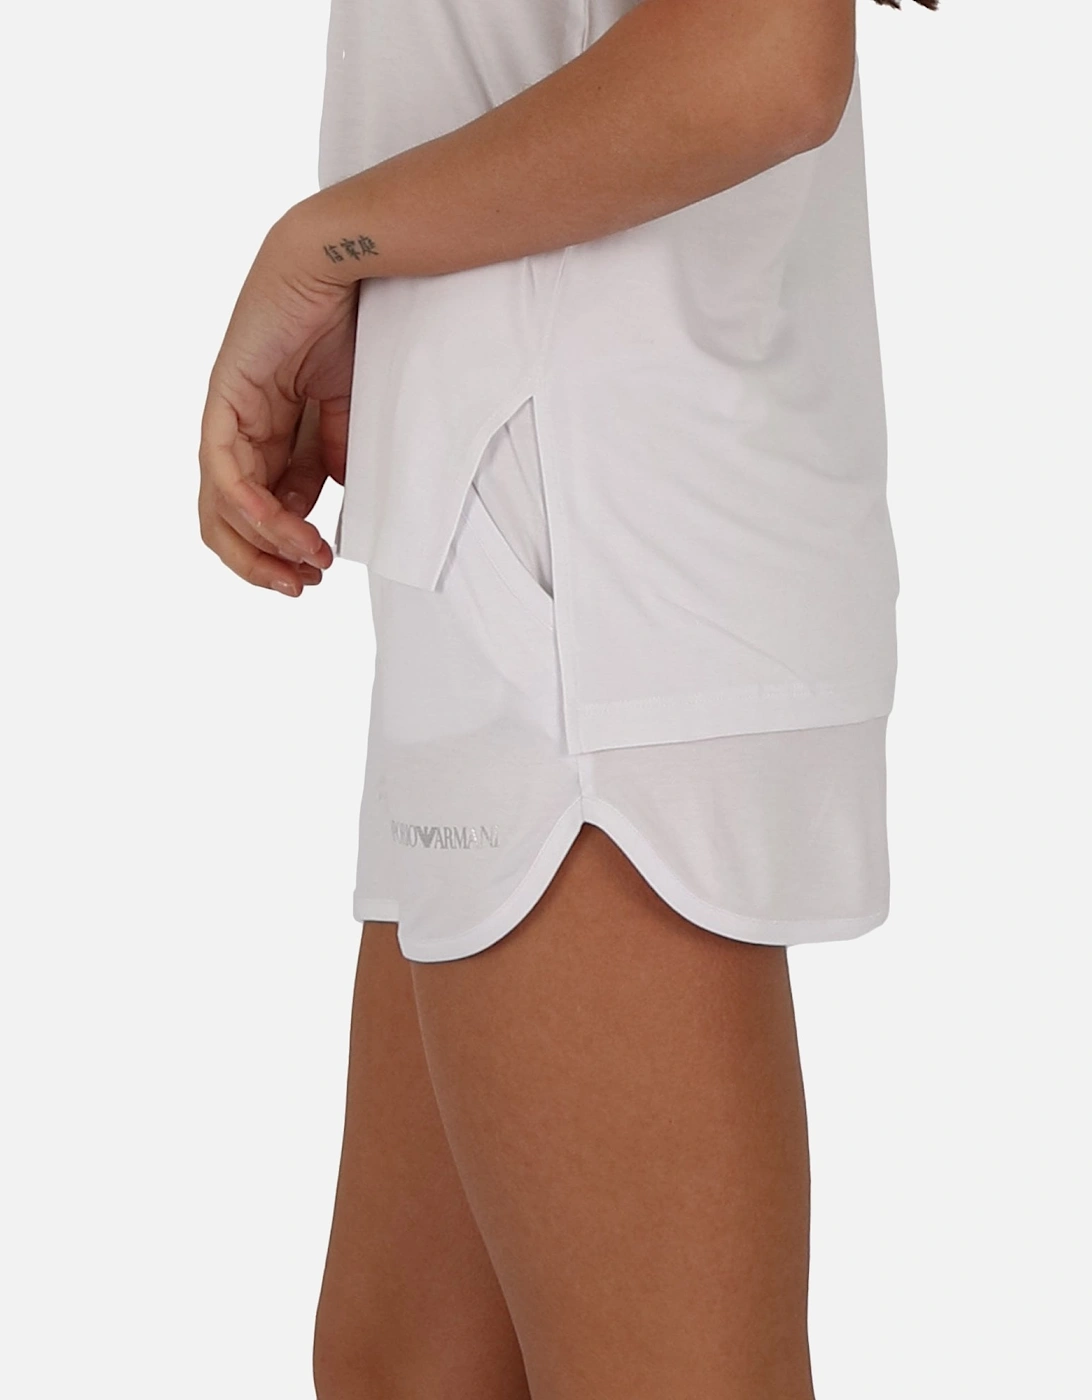 Knit Logo White Shorts